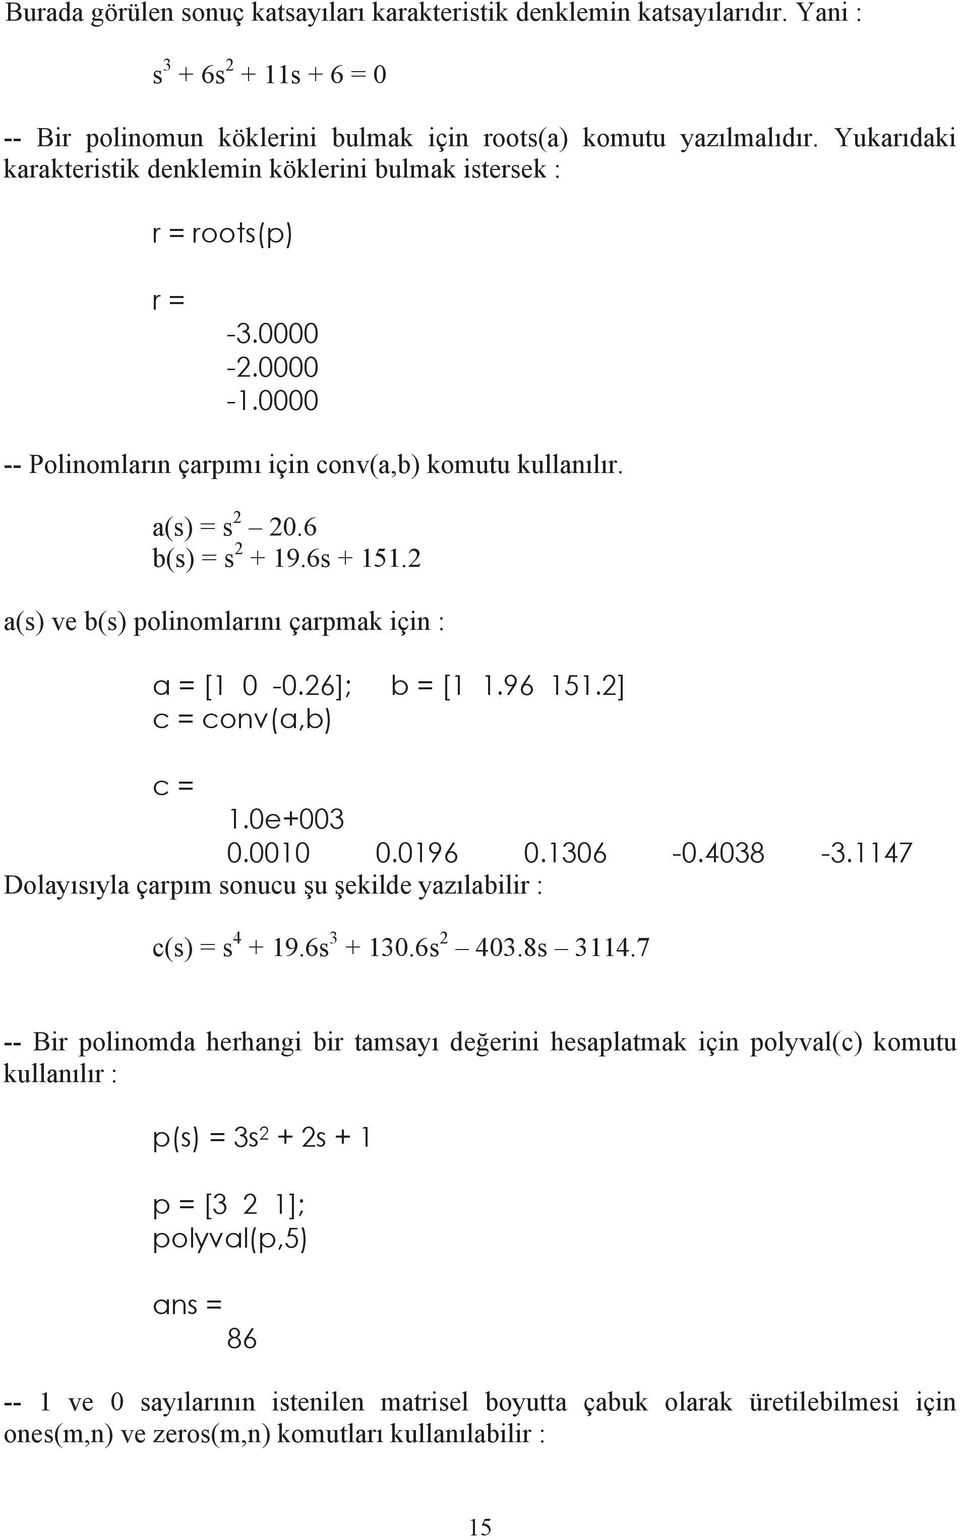 2 a(s) ve b(s) polinomlar n çarpmak için : a = [1 0-0.26]; b = [1 1.96 151.2] c = conv(a,b) c = 1.0e+003 0.0010 0.0196 0.1306-0.4038-3.